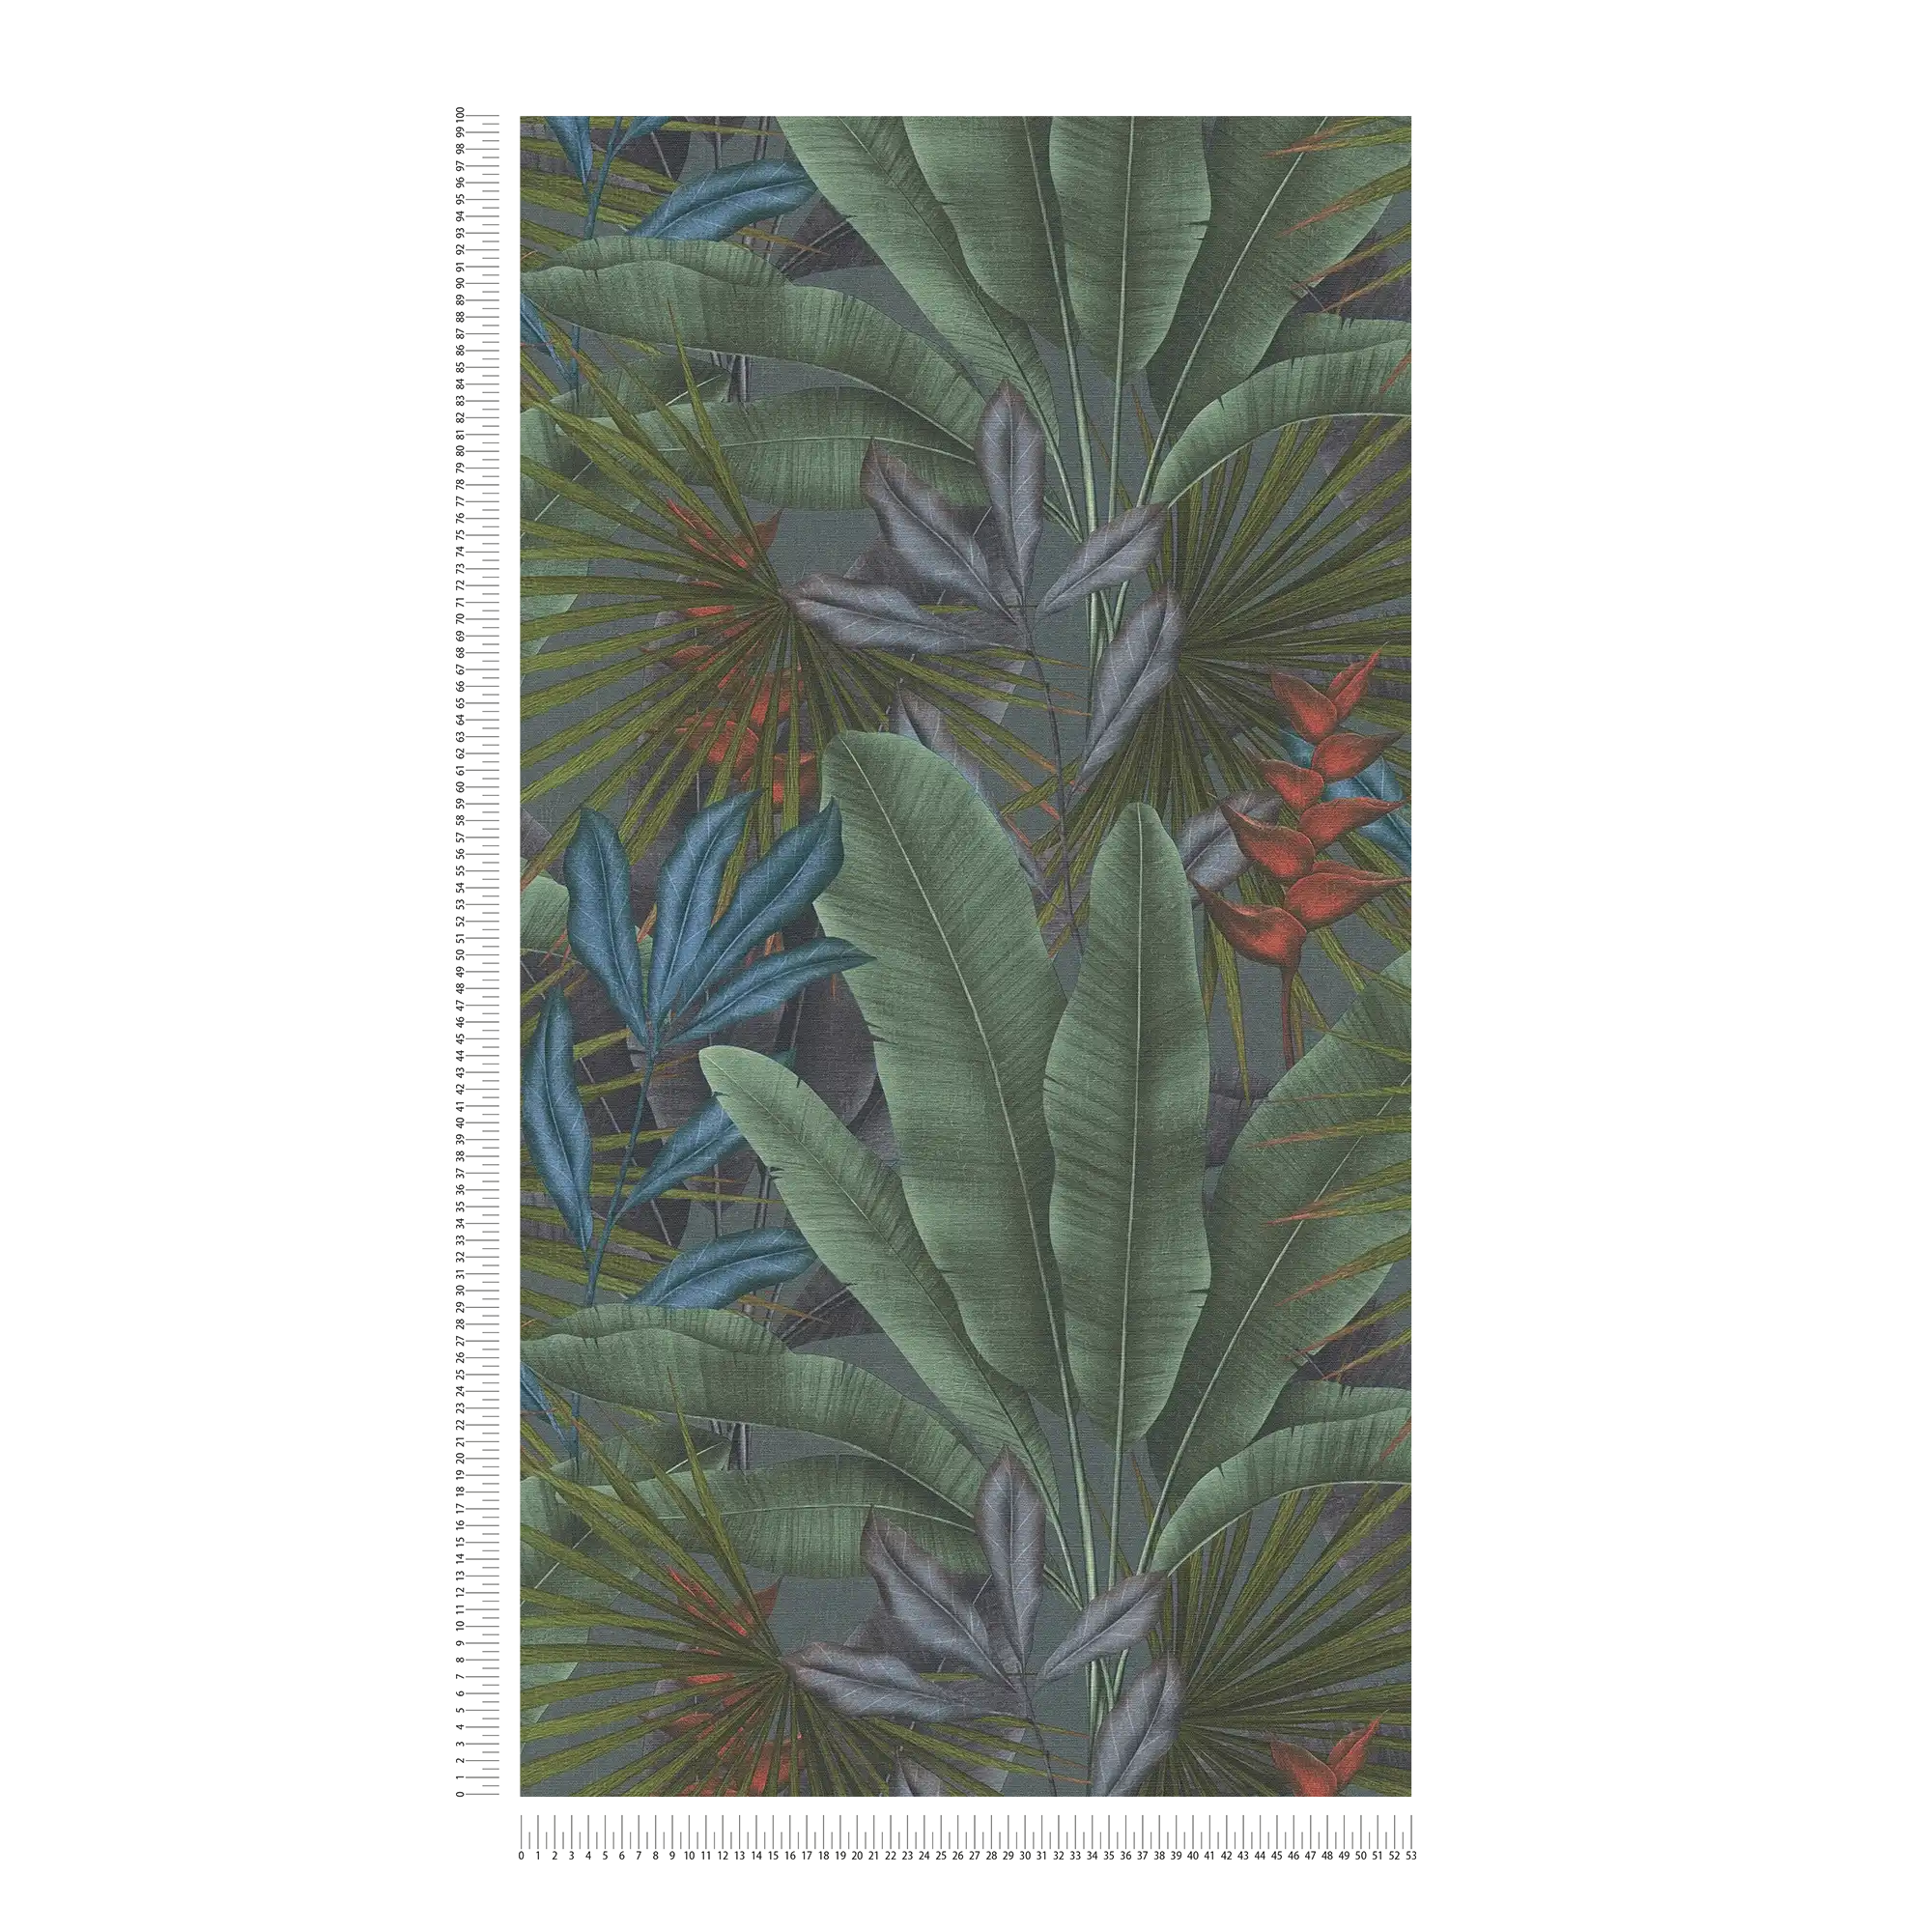             papier peint en papier intissé avec motifs de feuilles de jungle et accents colorés - gris, vert, rouge
        